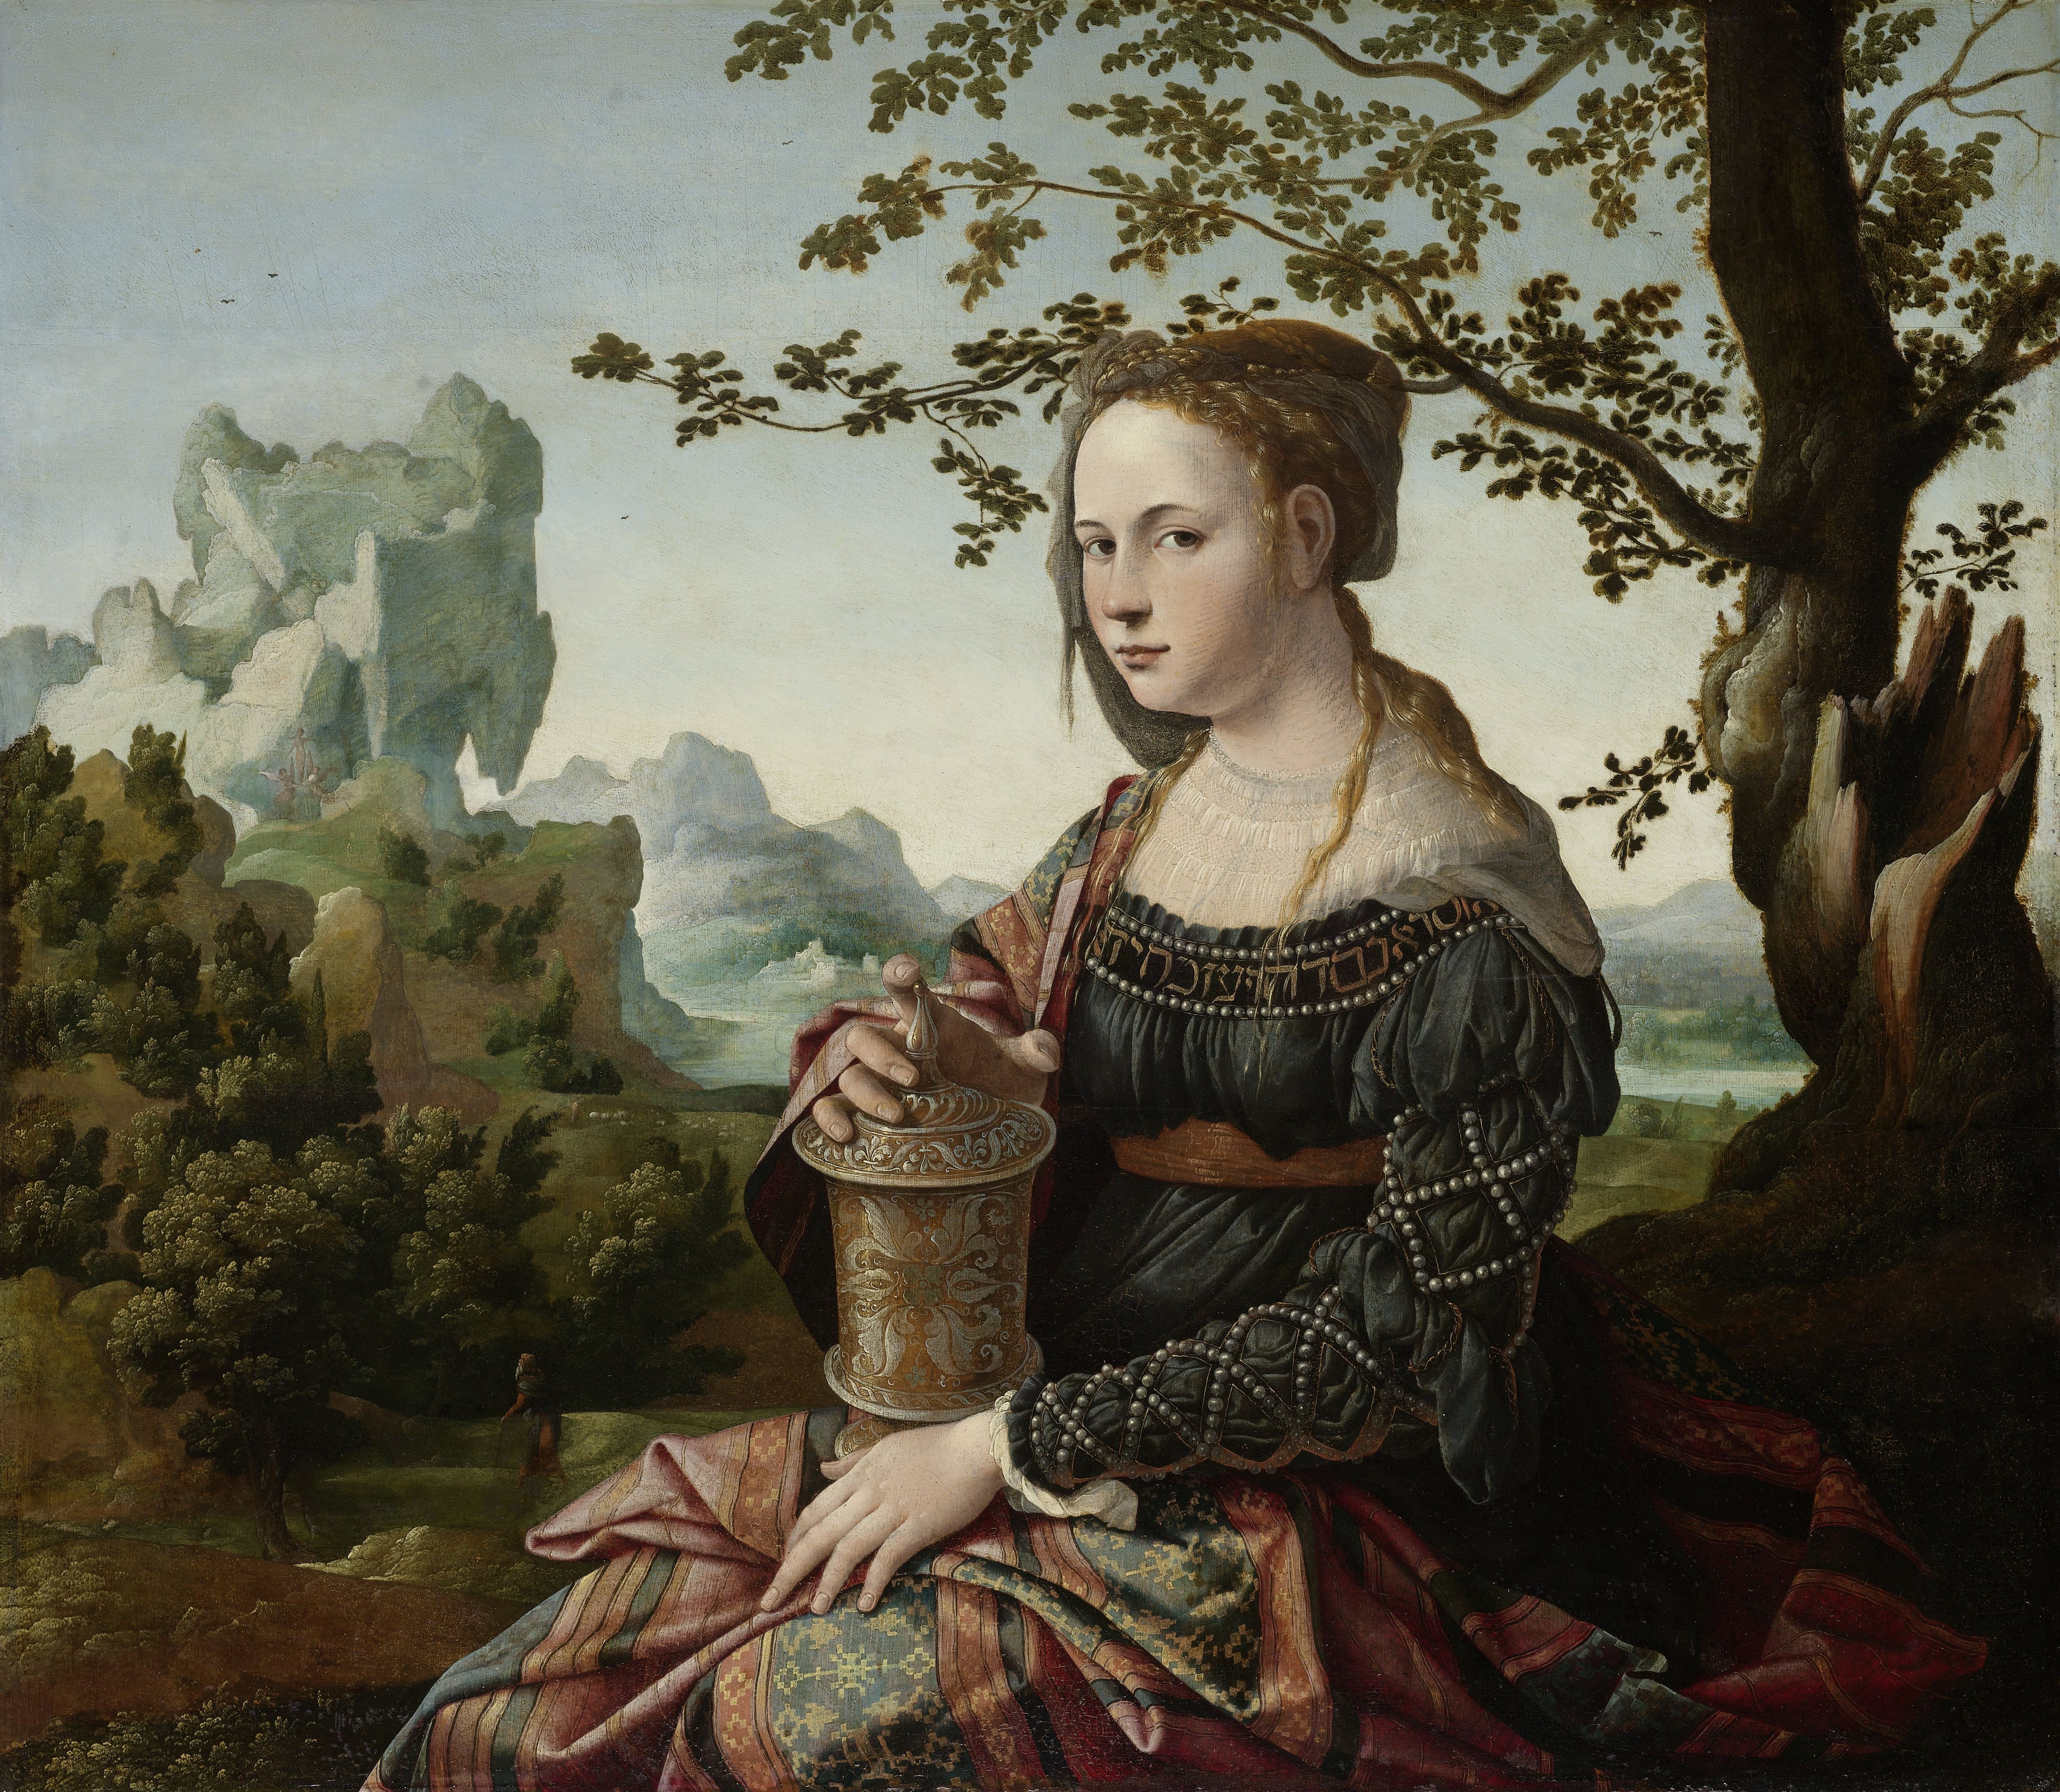 Pintura de María Magdalena by Jan van Scorel - 1530 Rijksmuseum